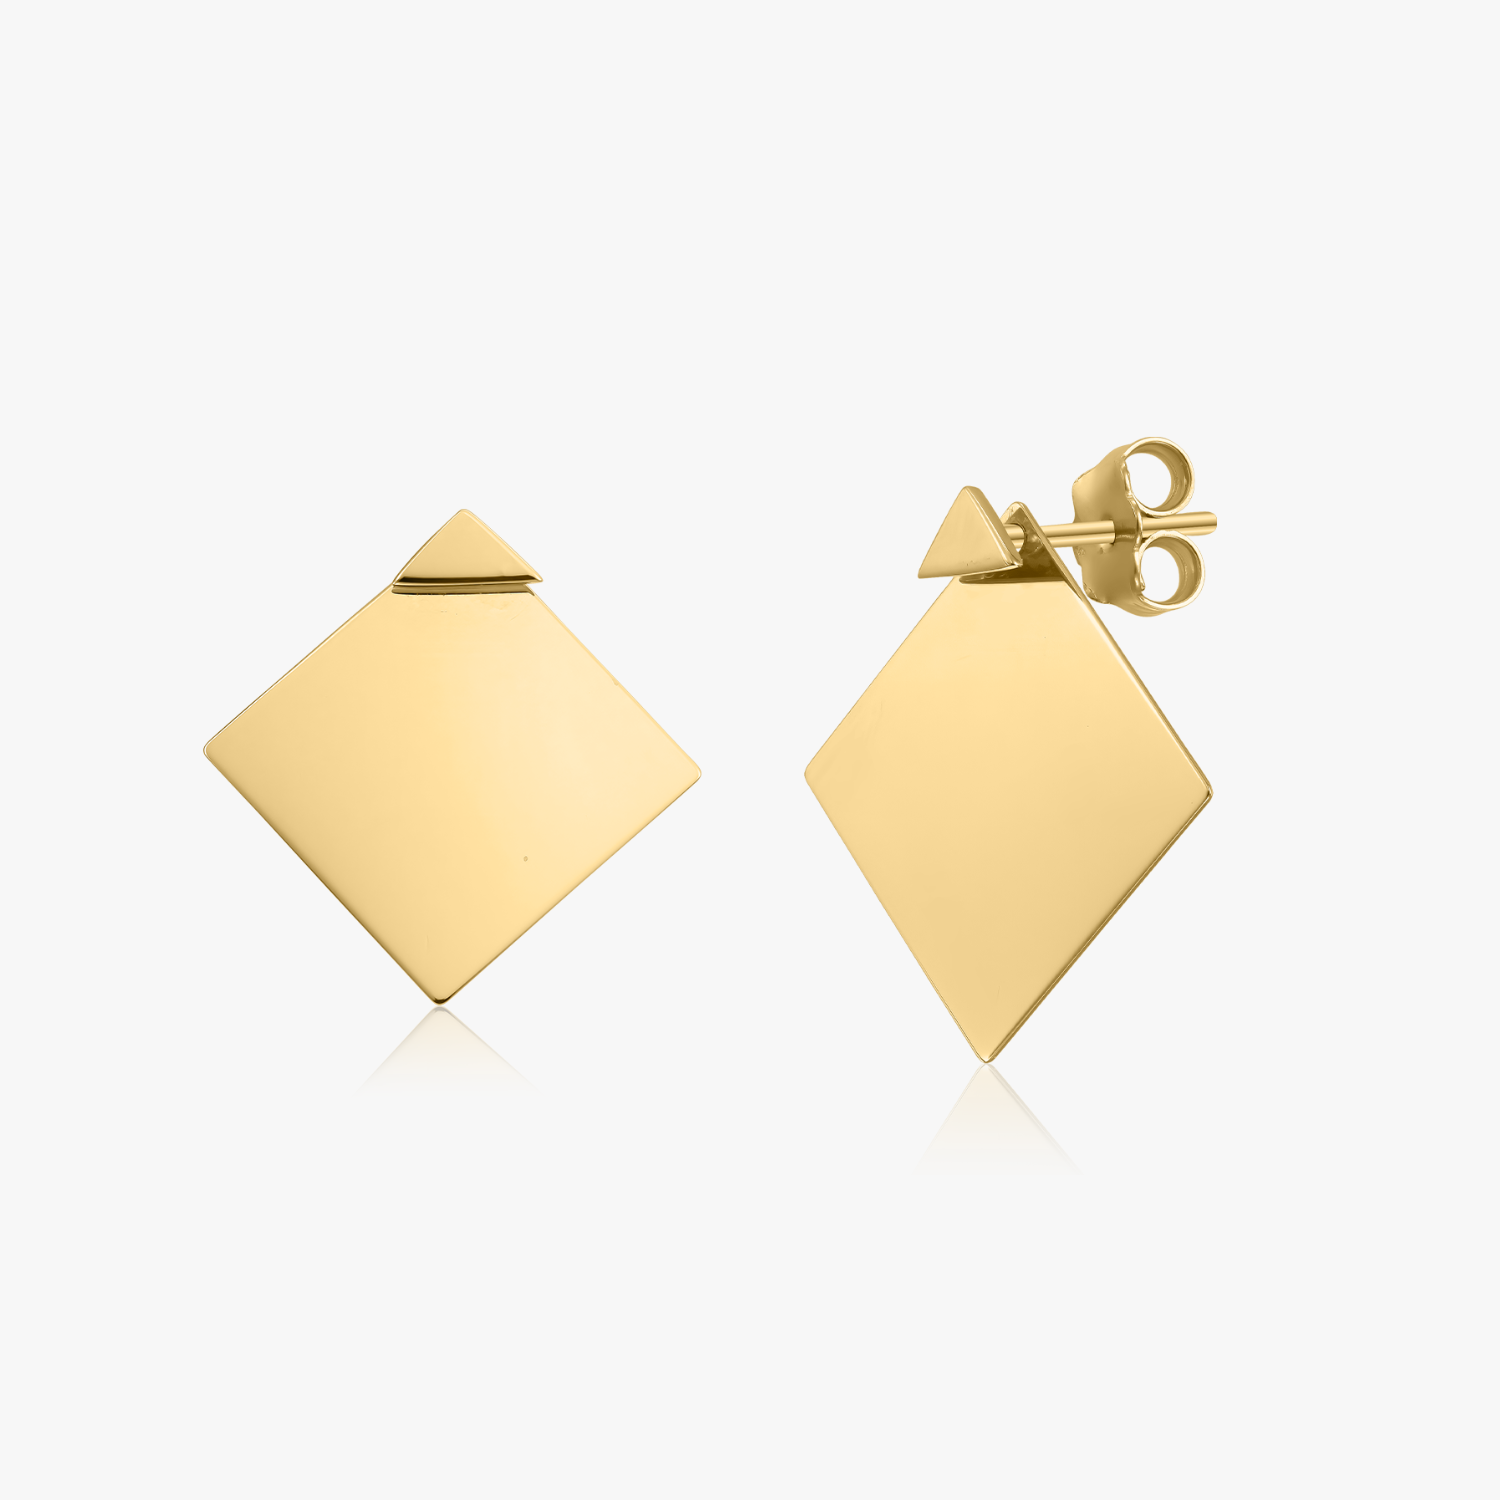 Ear Jacket gold earrings